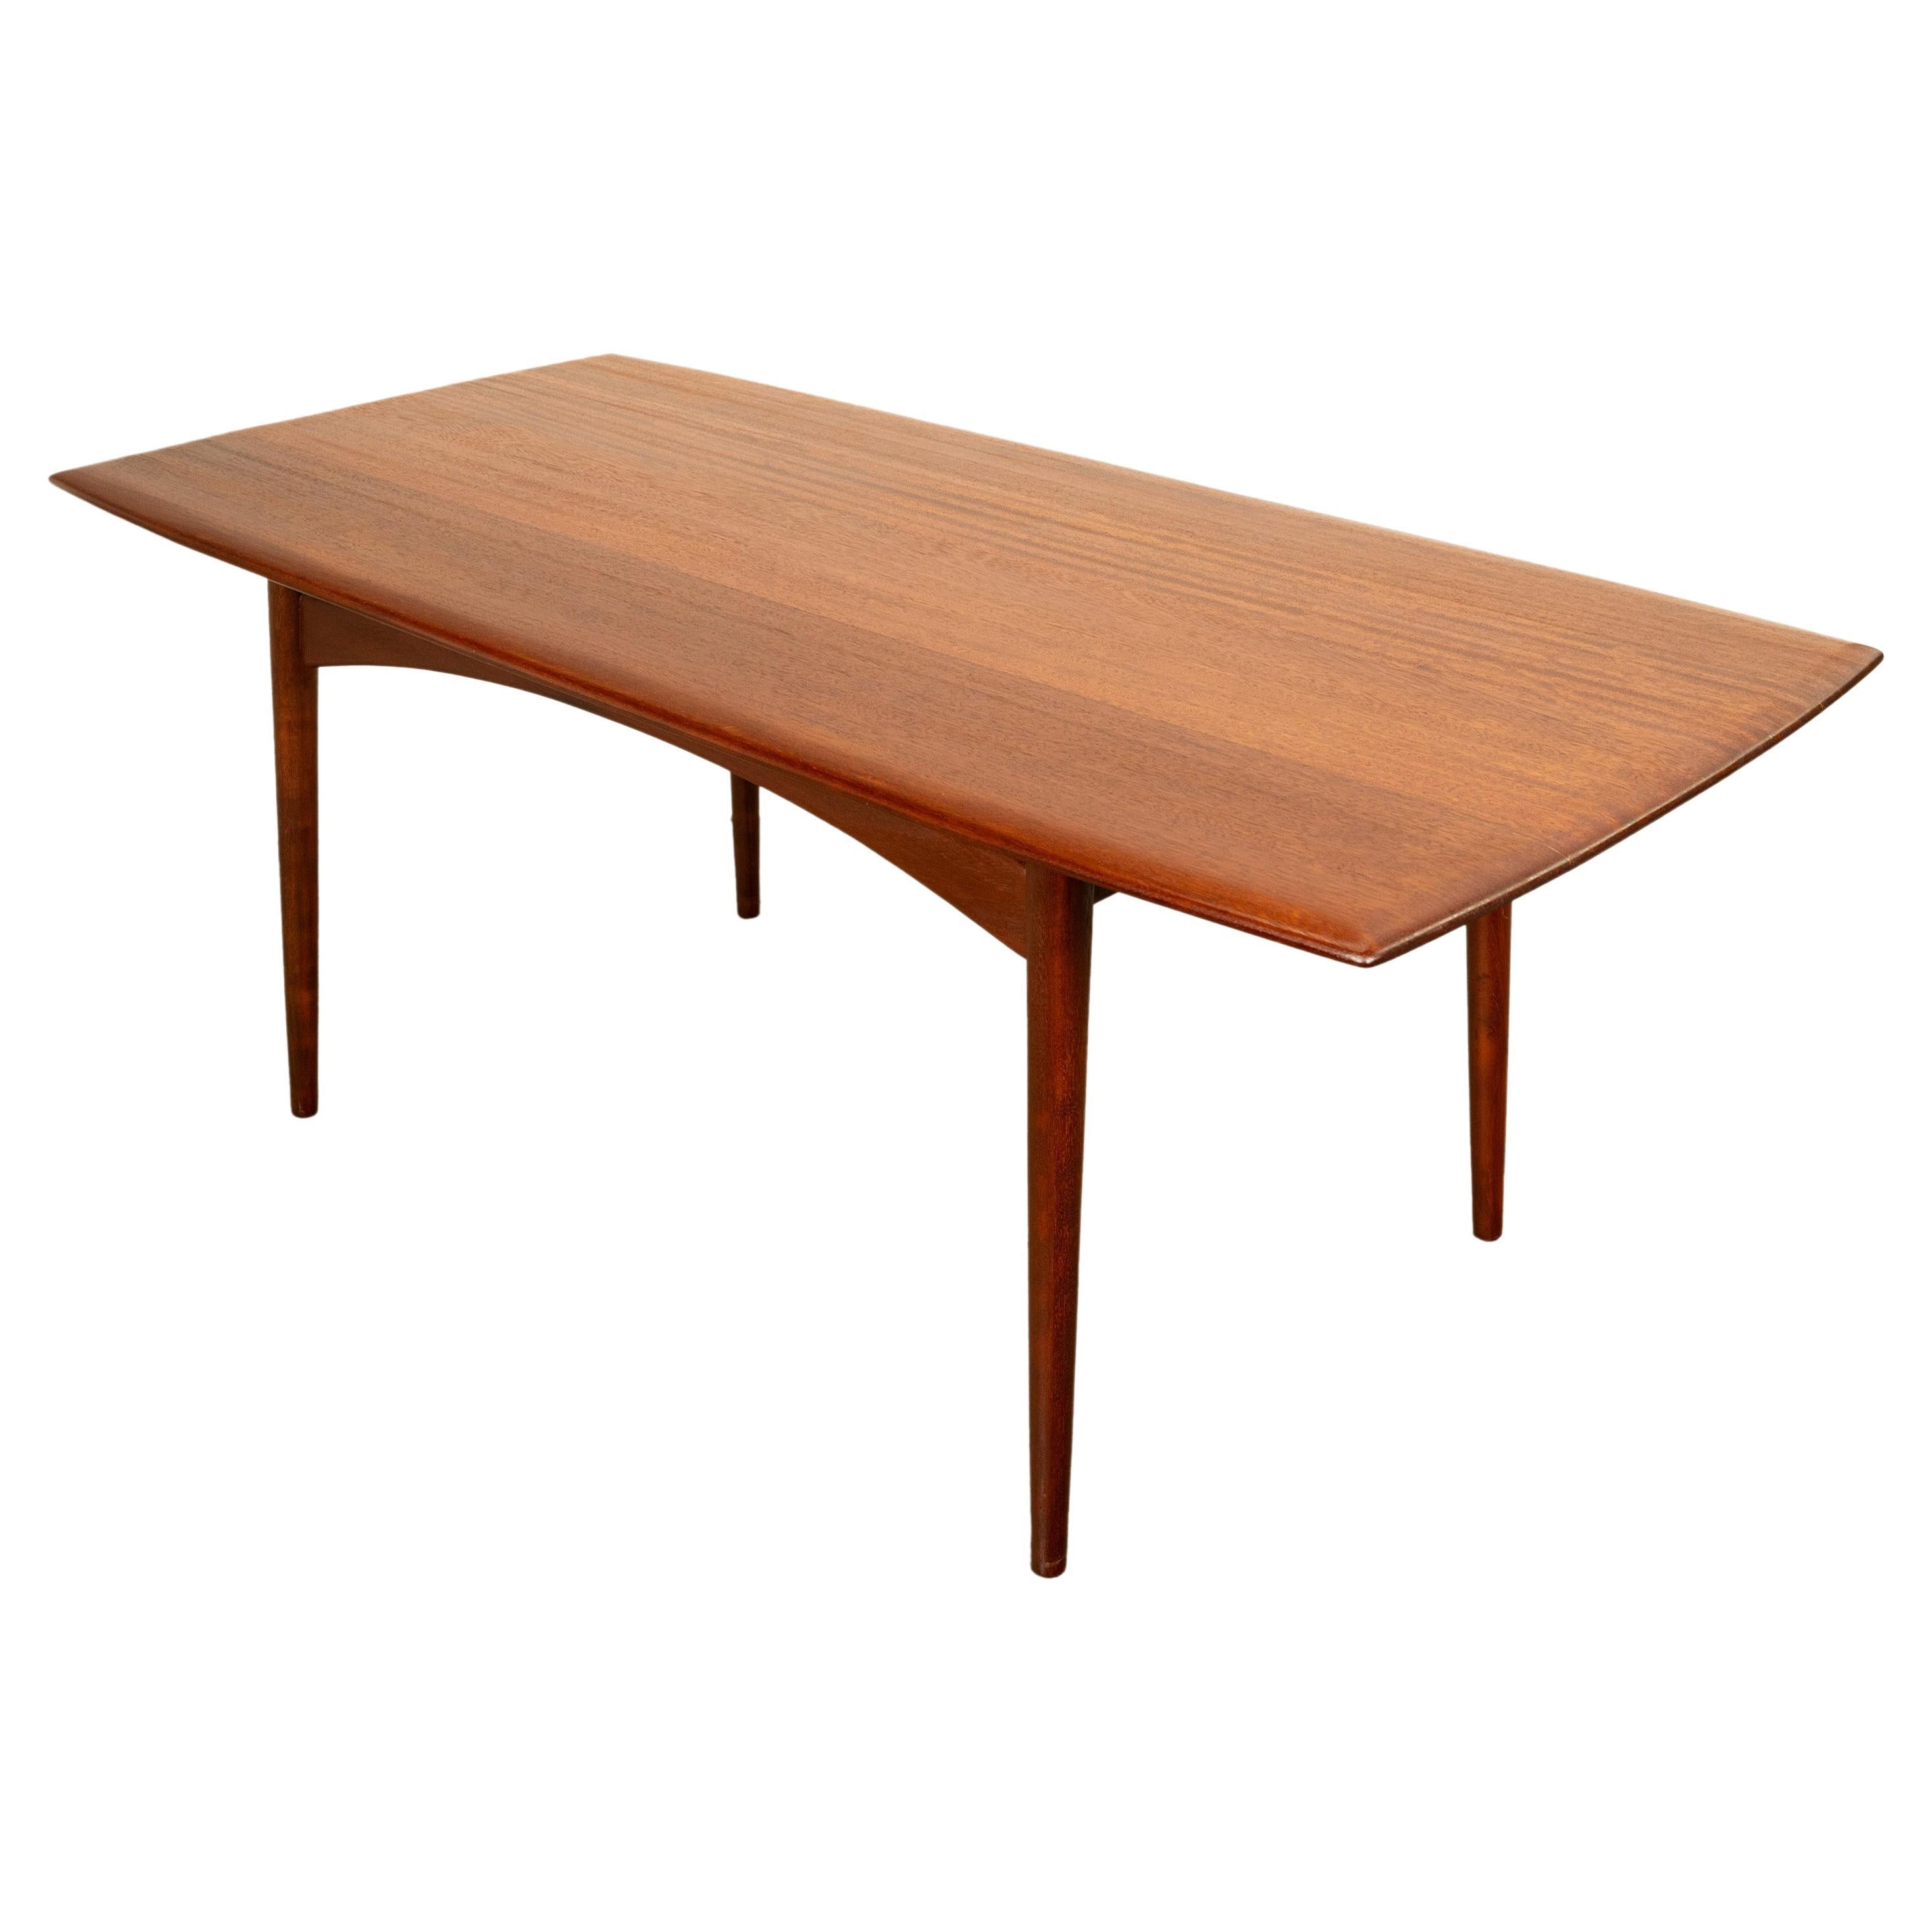 Ein sehr guter Mid Century Modern Afromosia Teak Esstisch, 1960.
Dieser sehr stilvolle MCM-Esstisch ist aus massivem Afromosia-Holz (auch als afrikanisches Teakholz bezeichnet) gefertigt. Der Tisch wurde von Malcolm David Walker für das